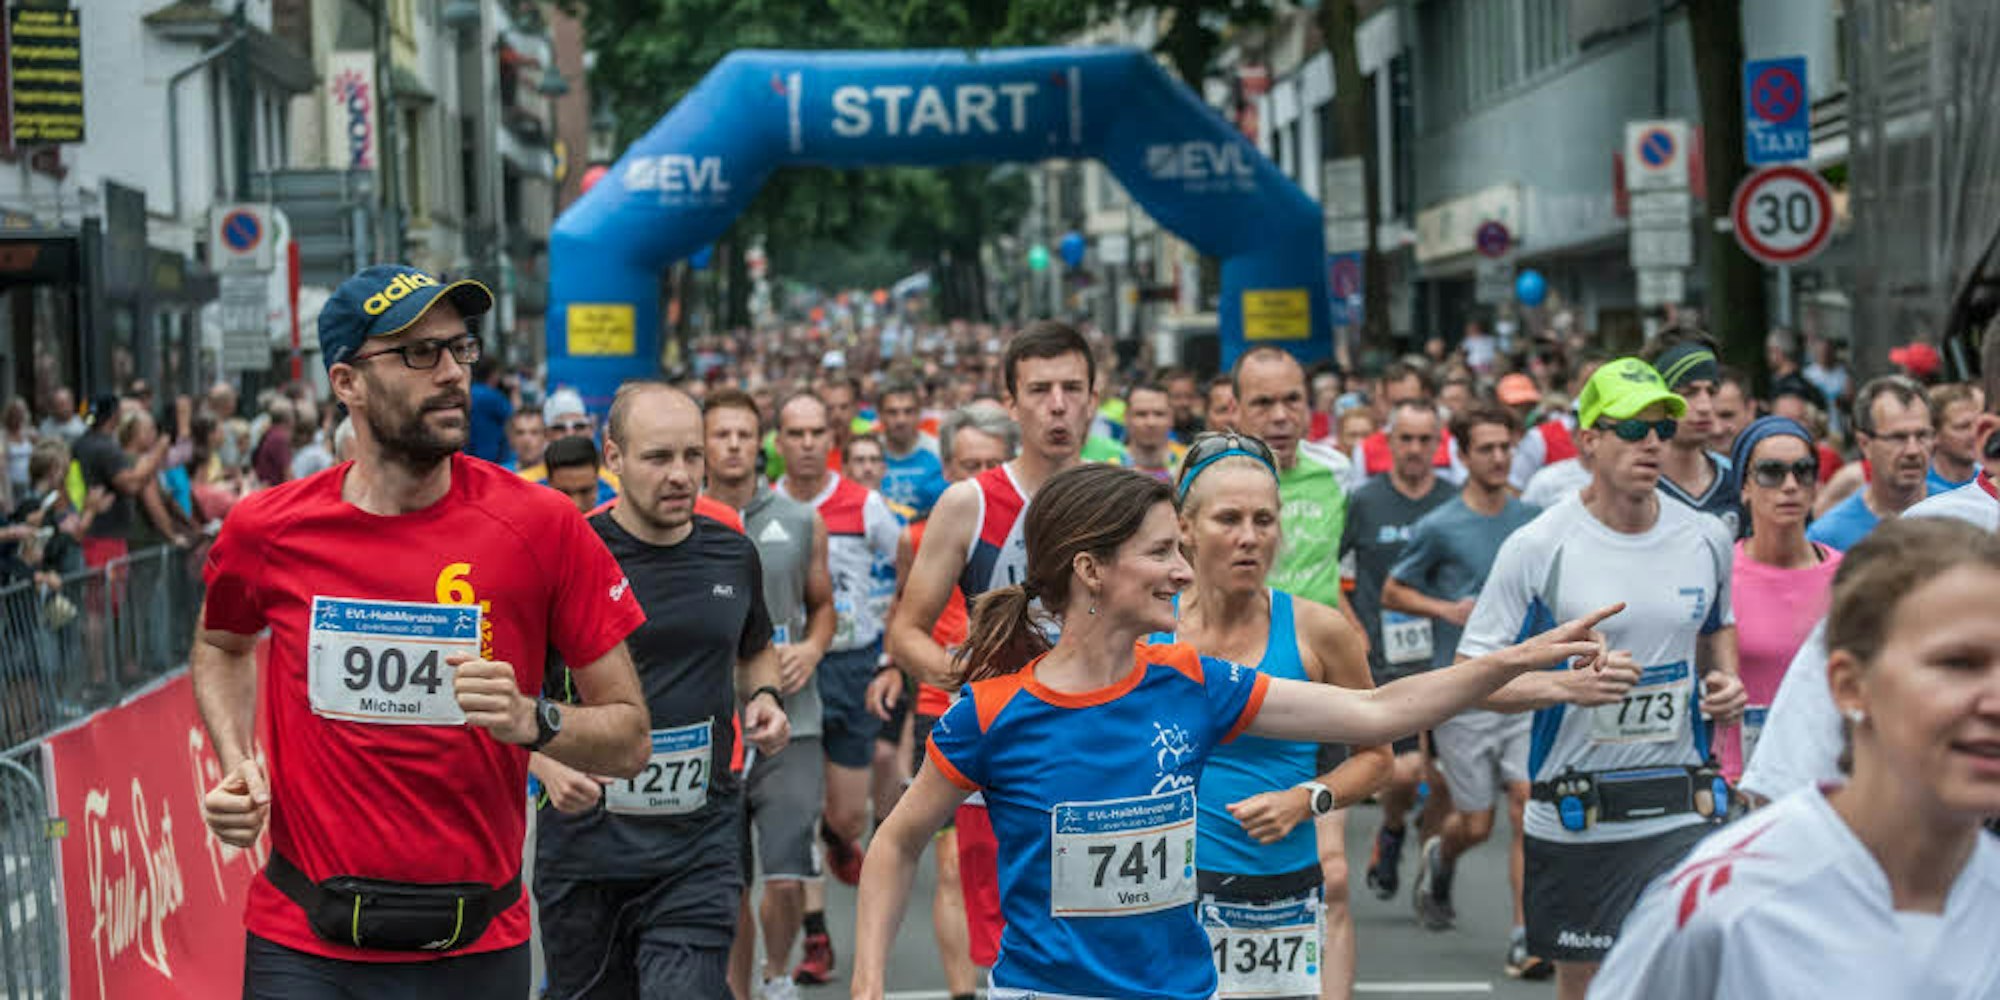 Der beliebte EVL-Halbmarathon durch die Stadt findet dieses Jahr zum 19. Mal statt.